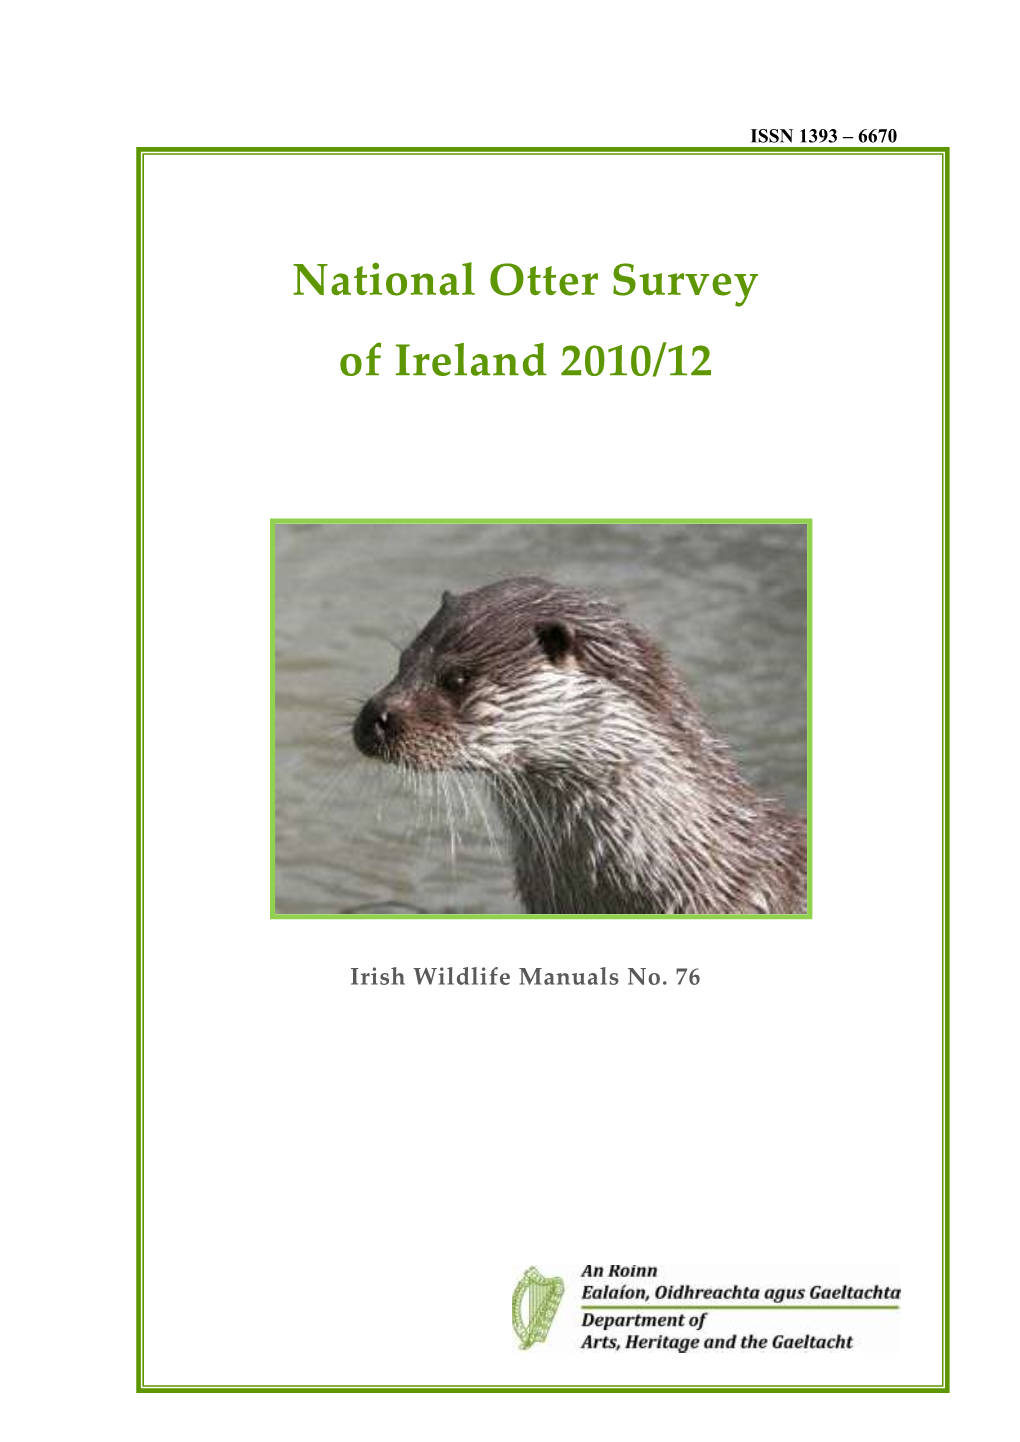 Irish Wildlife Manuals No. 76, National Otter Survey of Ireland 2010/12